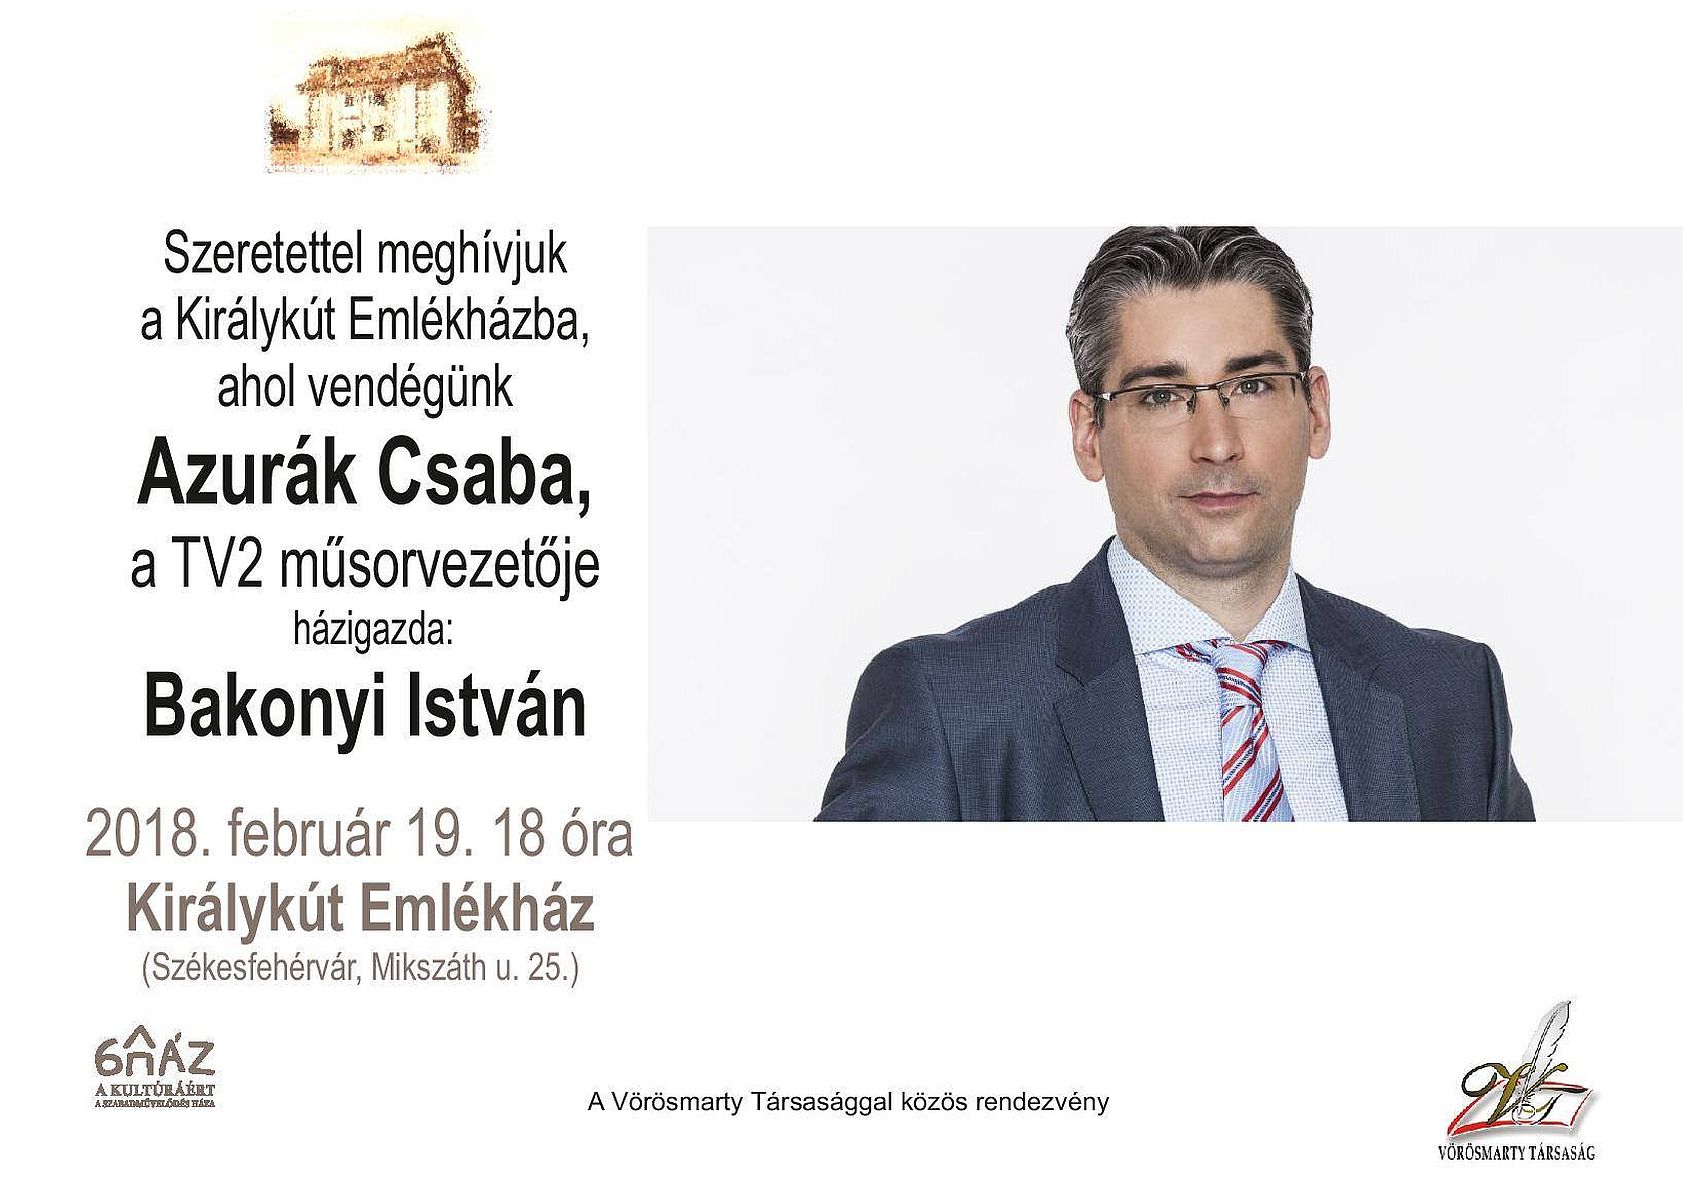 Azurák Csaba lesz a hétfő esti vendég a Királykút Emlékházban